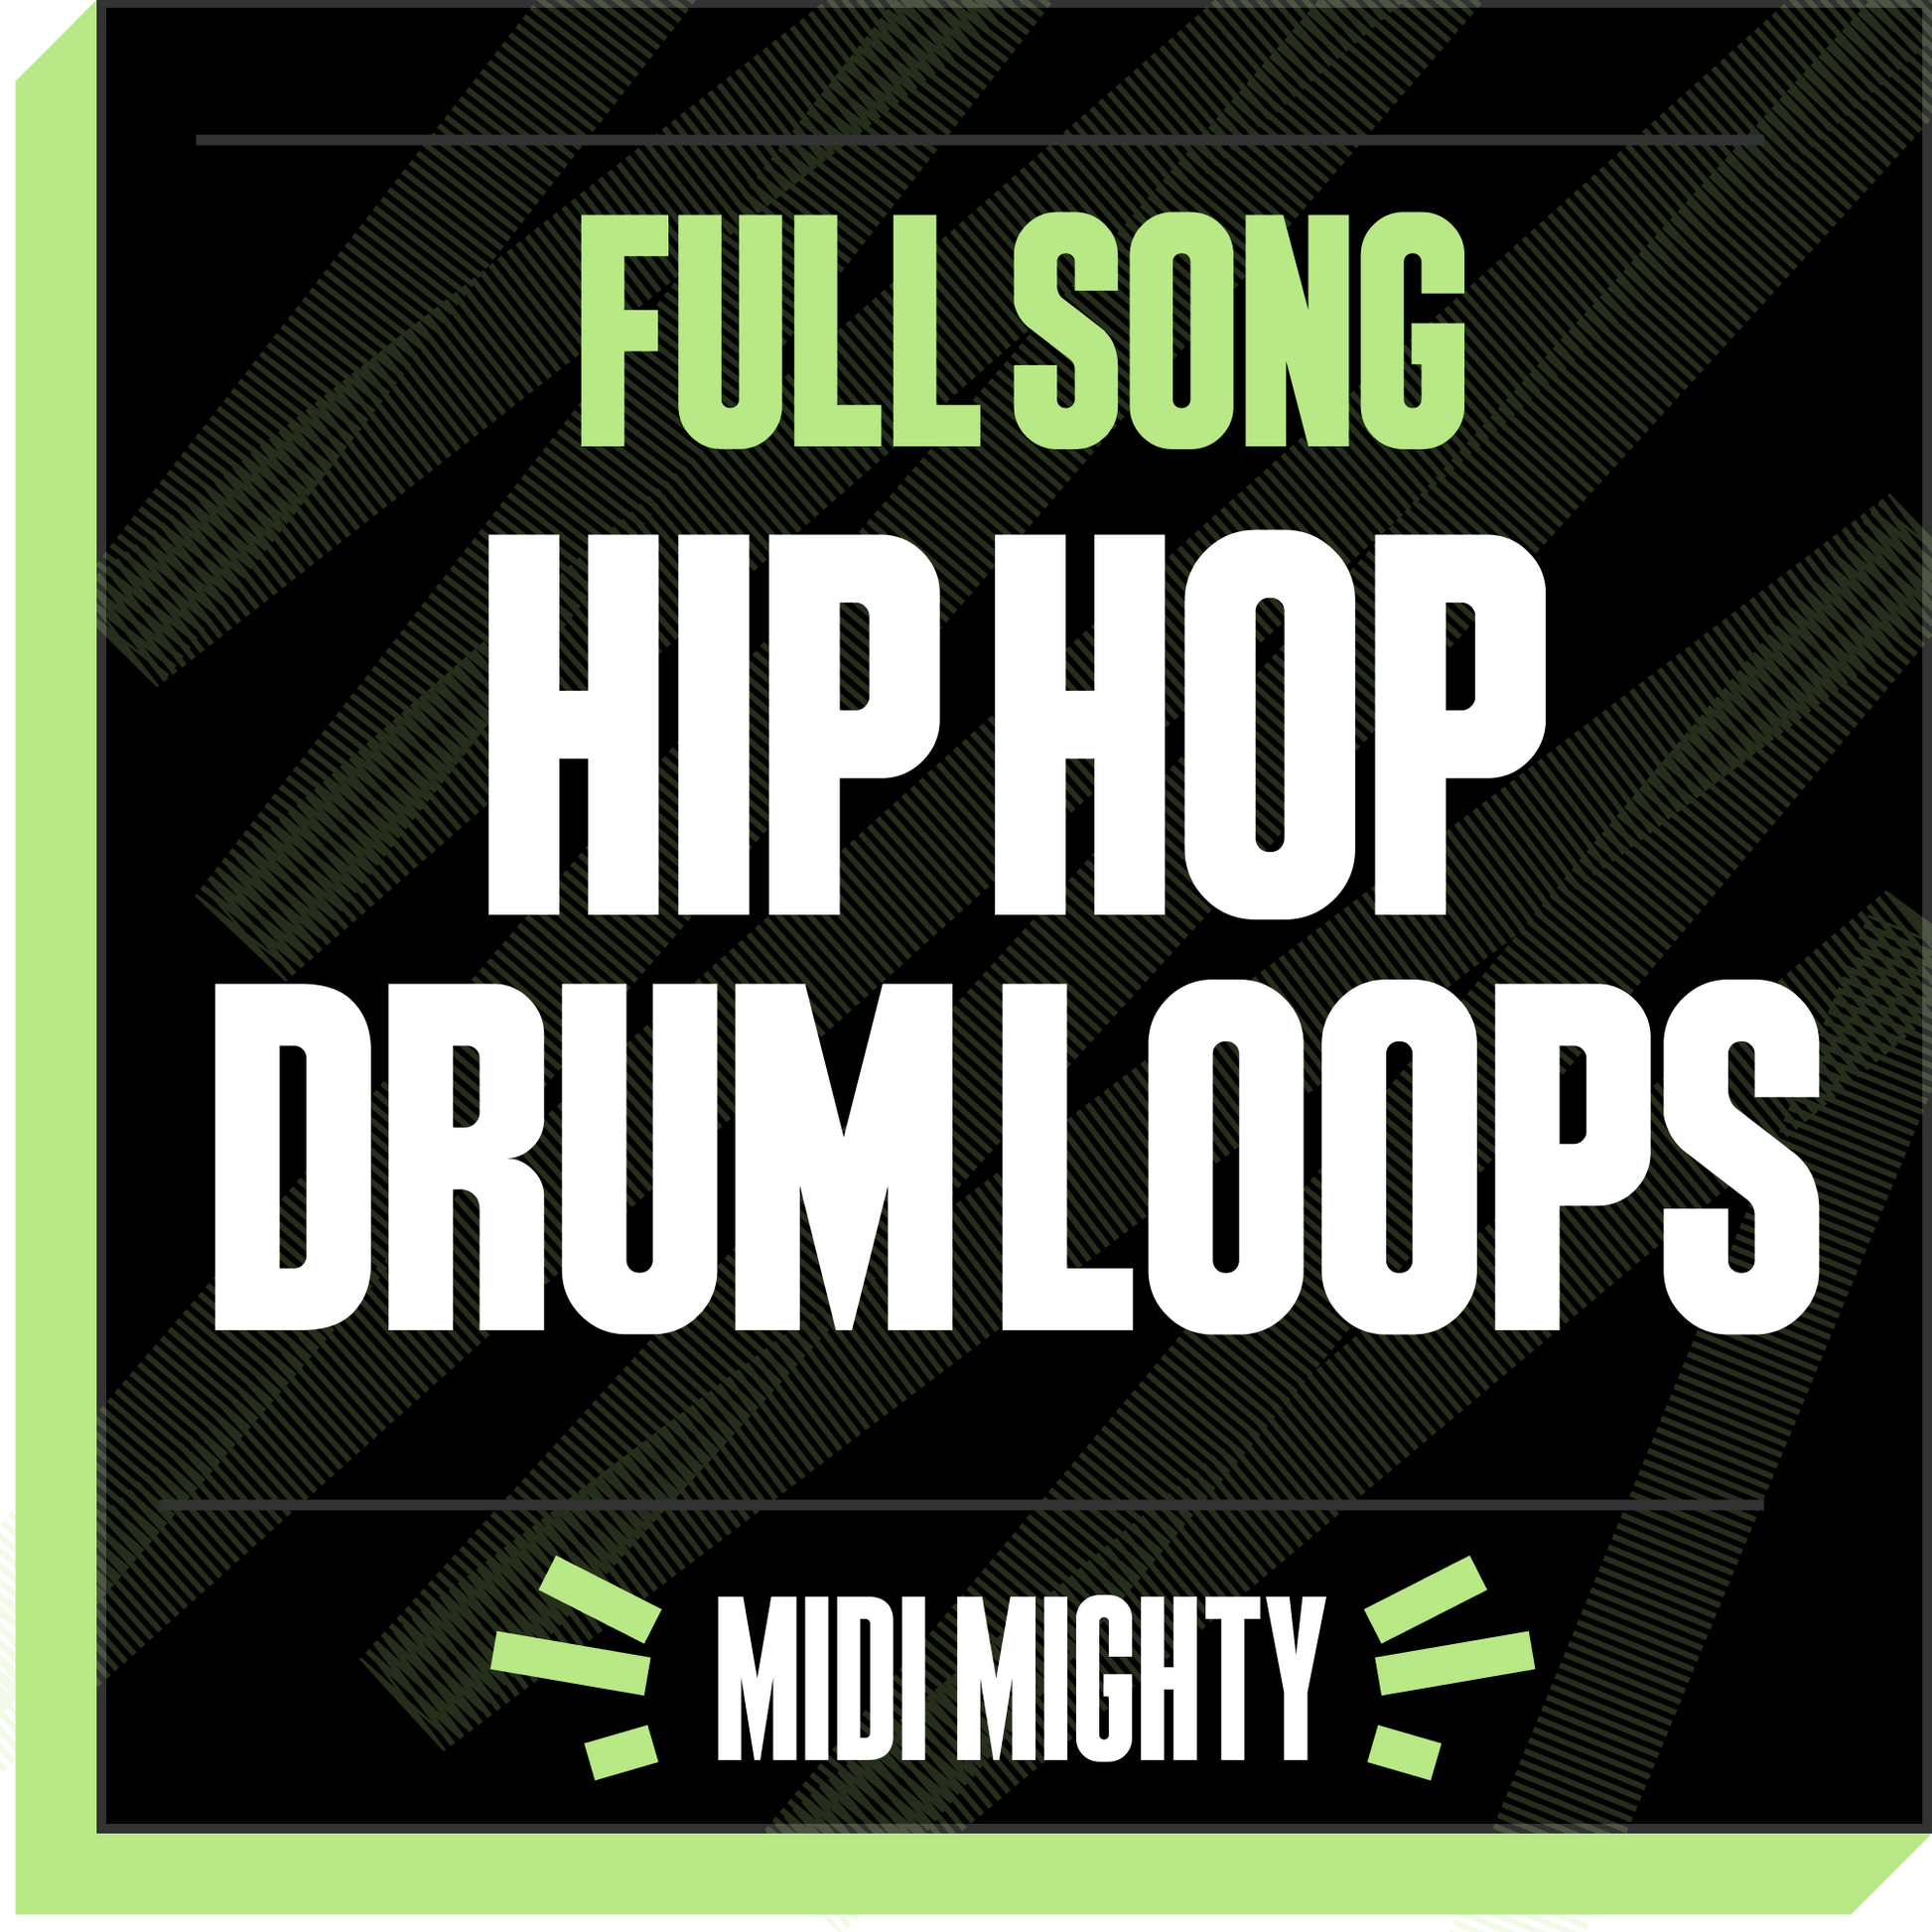 Hip Hop Drum Loops Vol. 01 - Full Song Drum Loops - MIDI MIGHTY